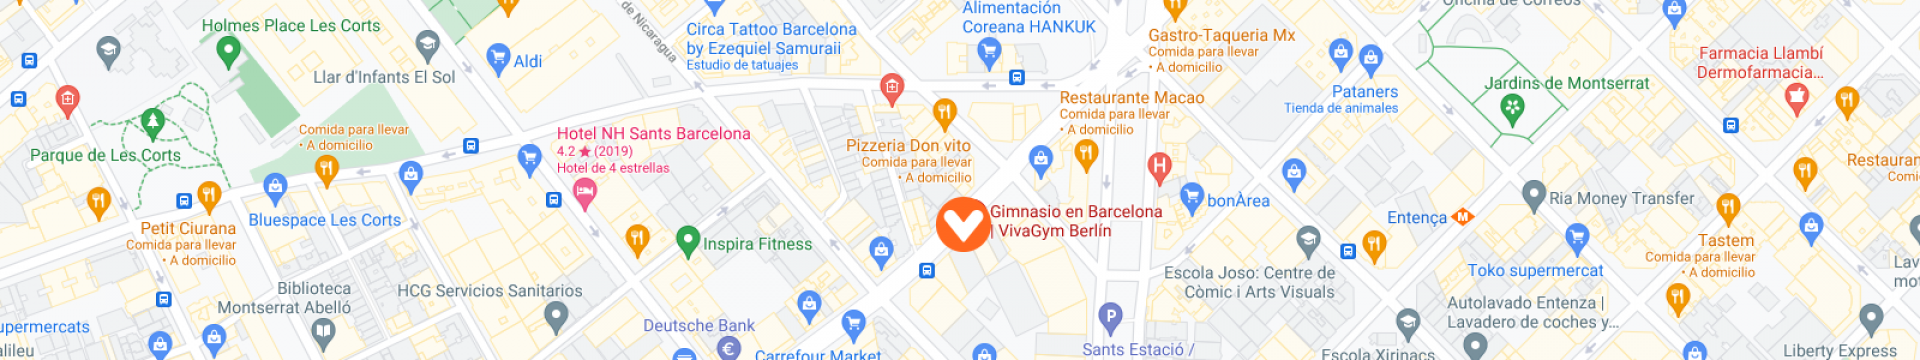 mapa vivagym berlín